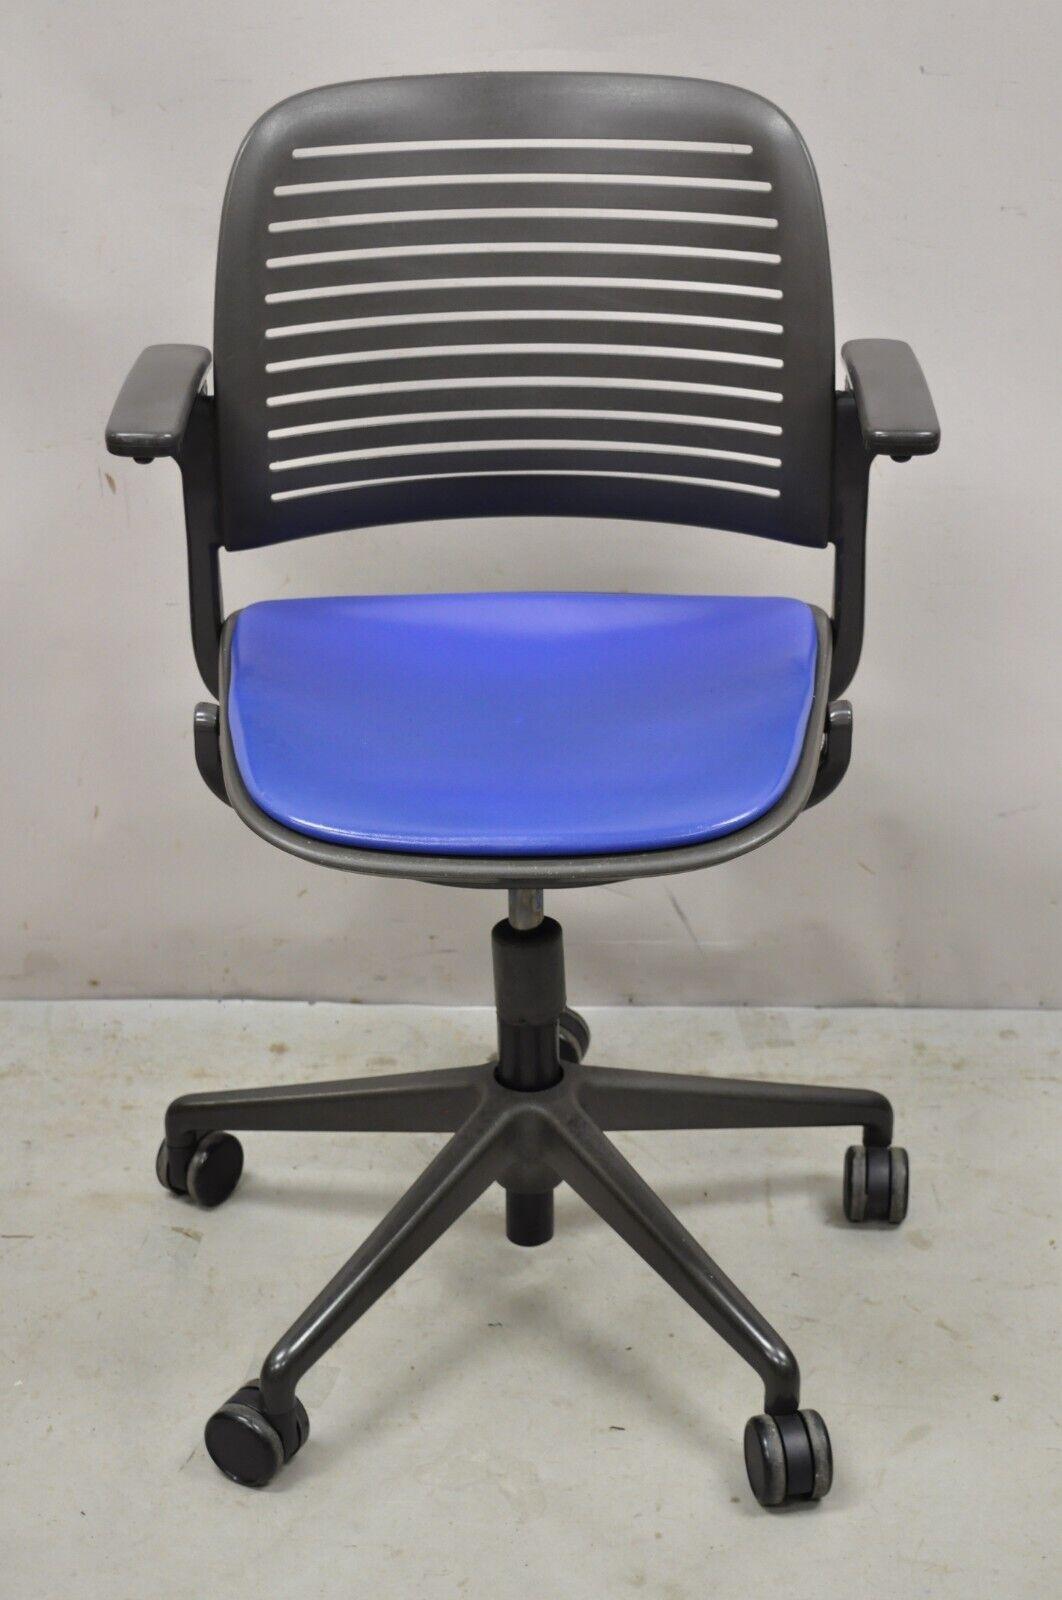 Steelcase 487 Cachet Bürodrehstuhl mit blauem Sitz. Der Artikel ist höhenverstellbar, blauer Sitz, Rollen, hochklappbare Armlehnen, originales Label, toller Stil und Form. Abmessungen: 37